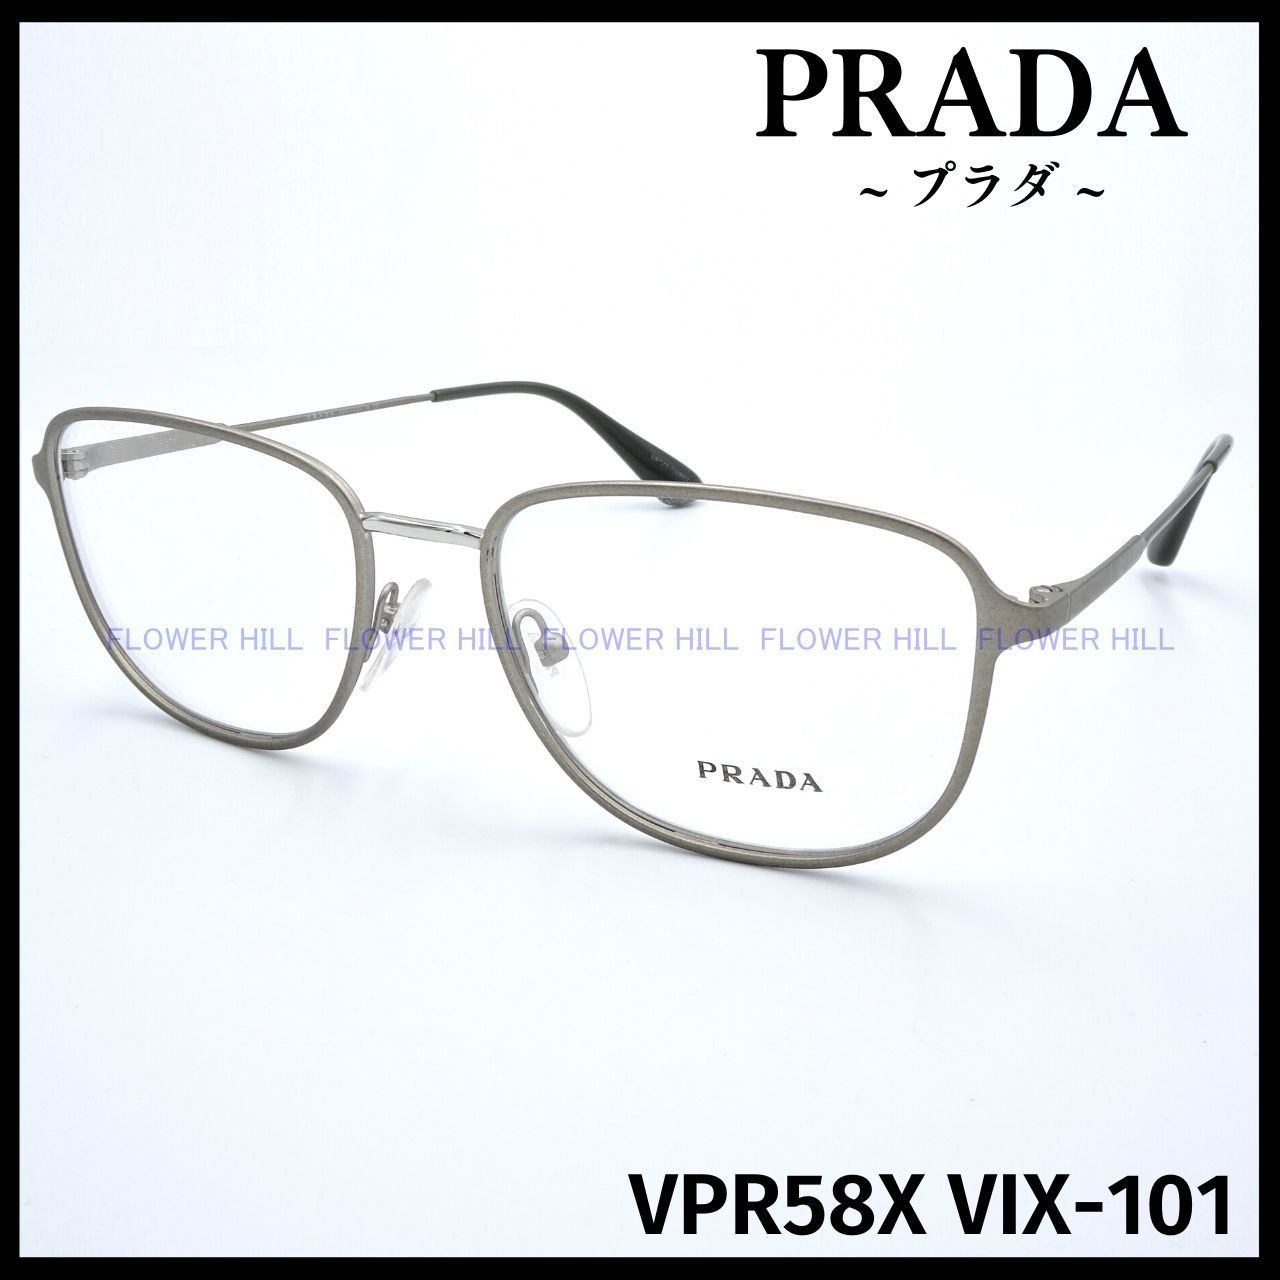 プラダ PRADA メガネ VIX VPR58X メタルフレーム イタリア製 - 通販